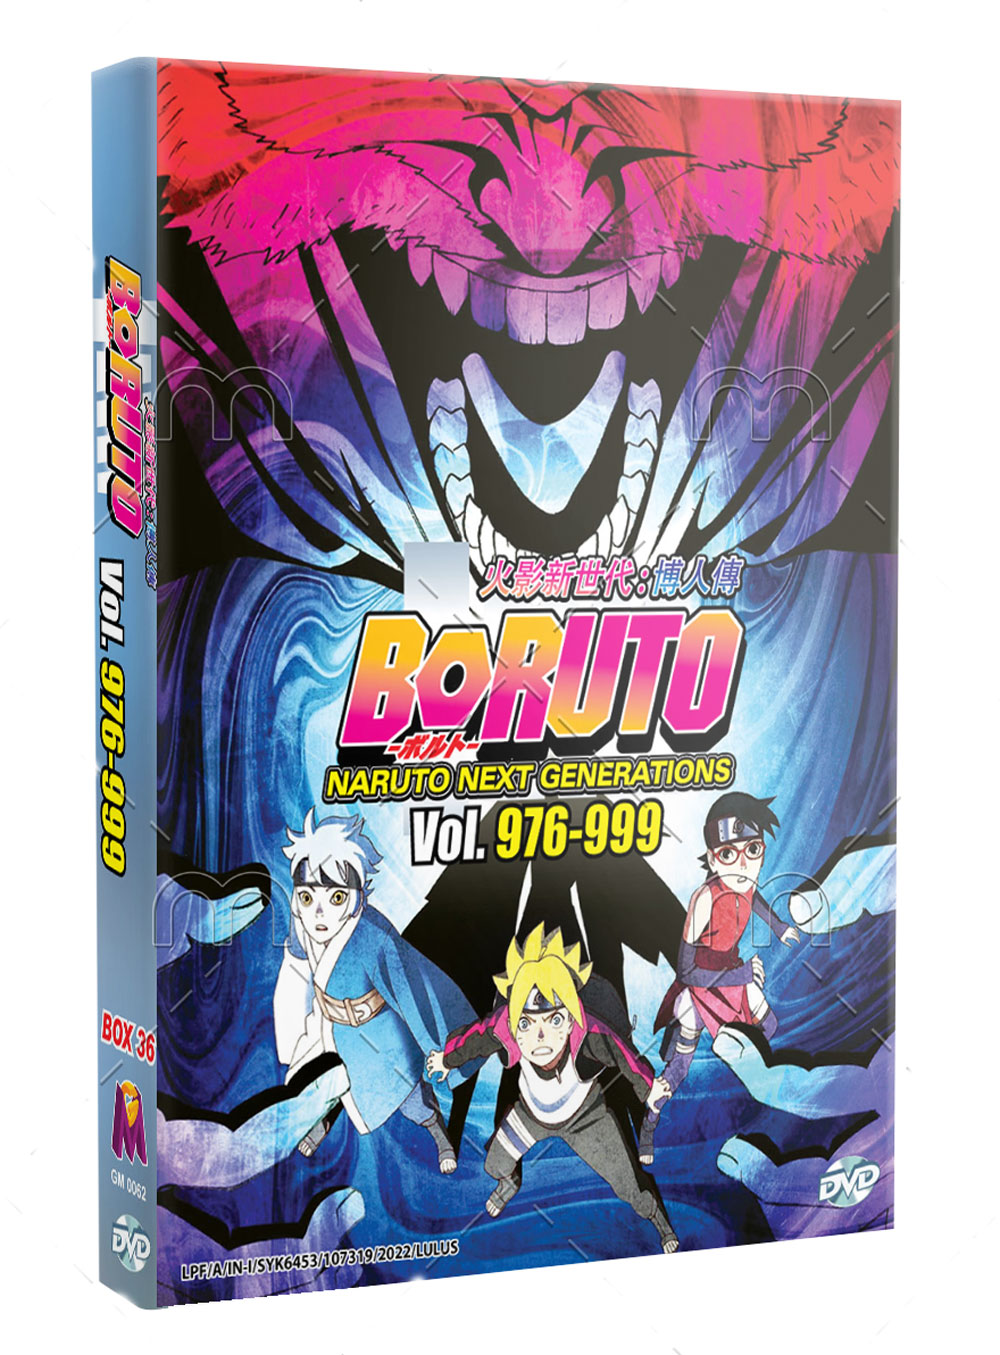 ボルト-NARUTO NEXT GENERATIONS- TV 976-999 (Box 36) (DVD) (2018) アニメ